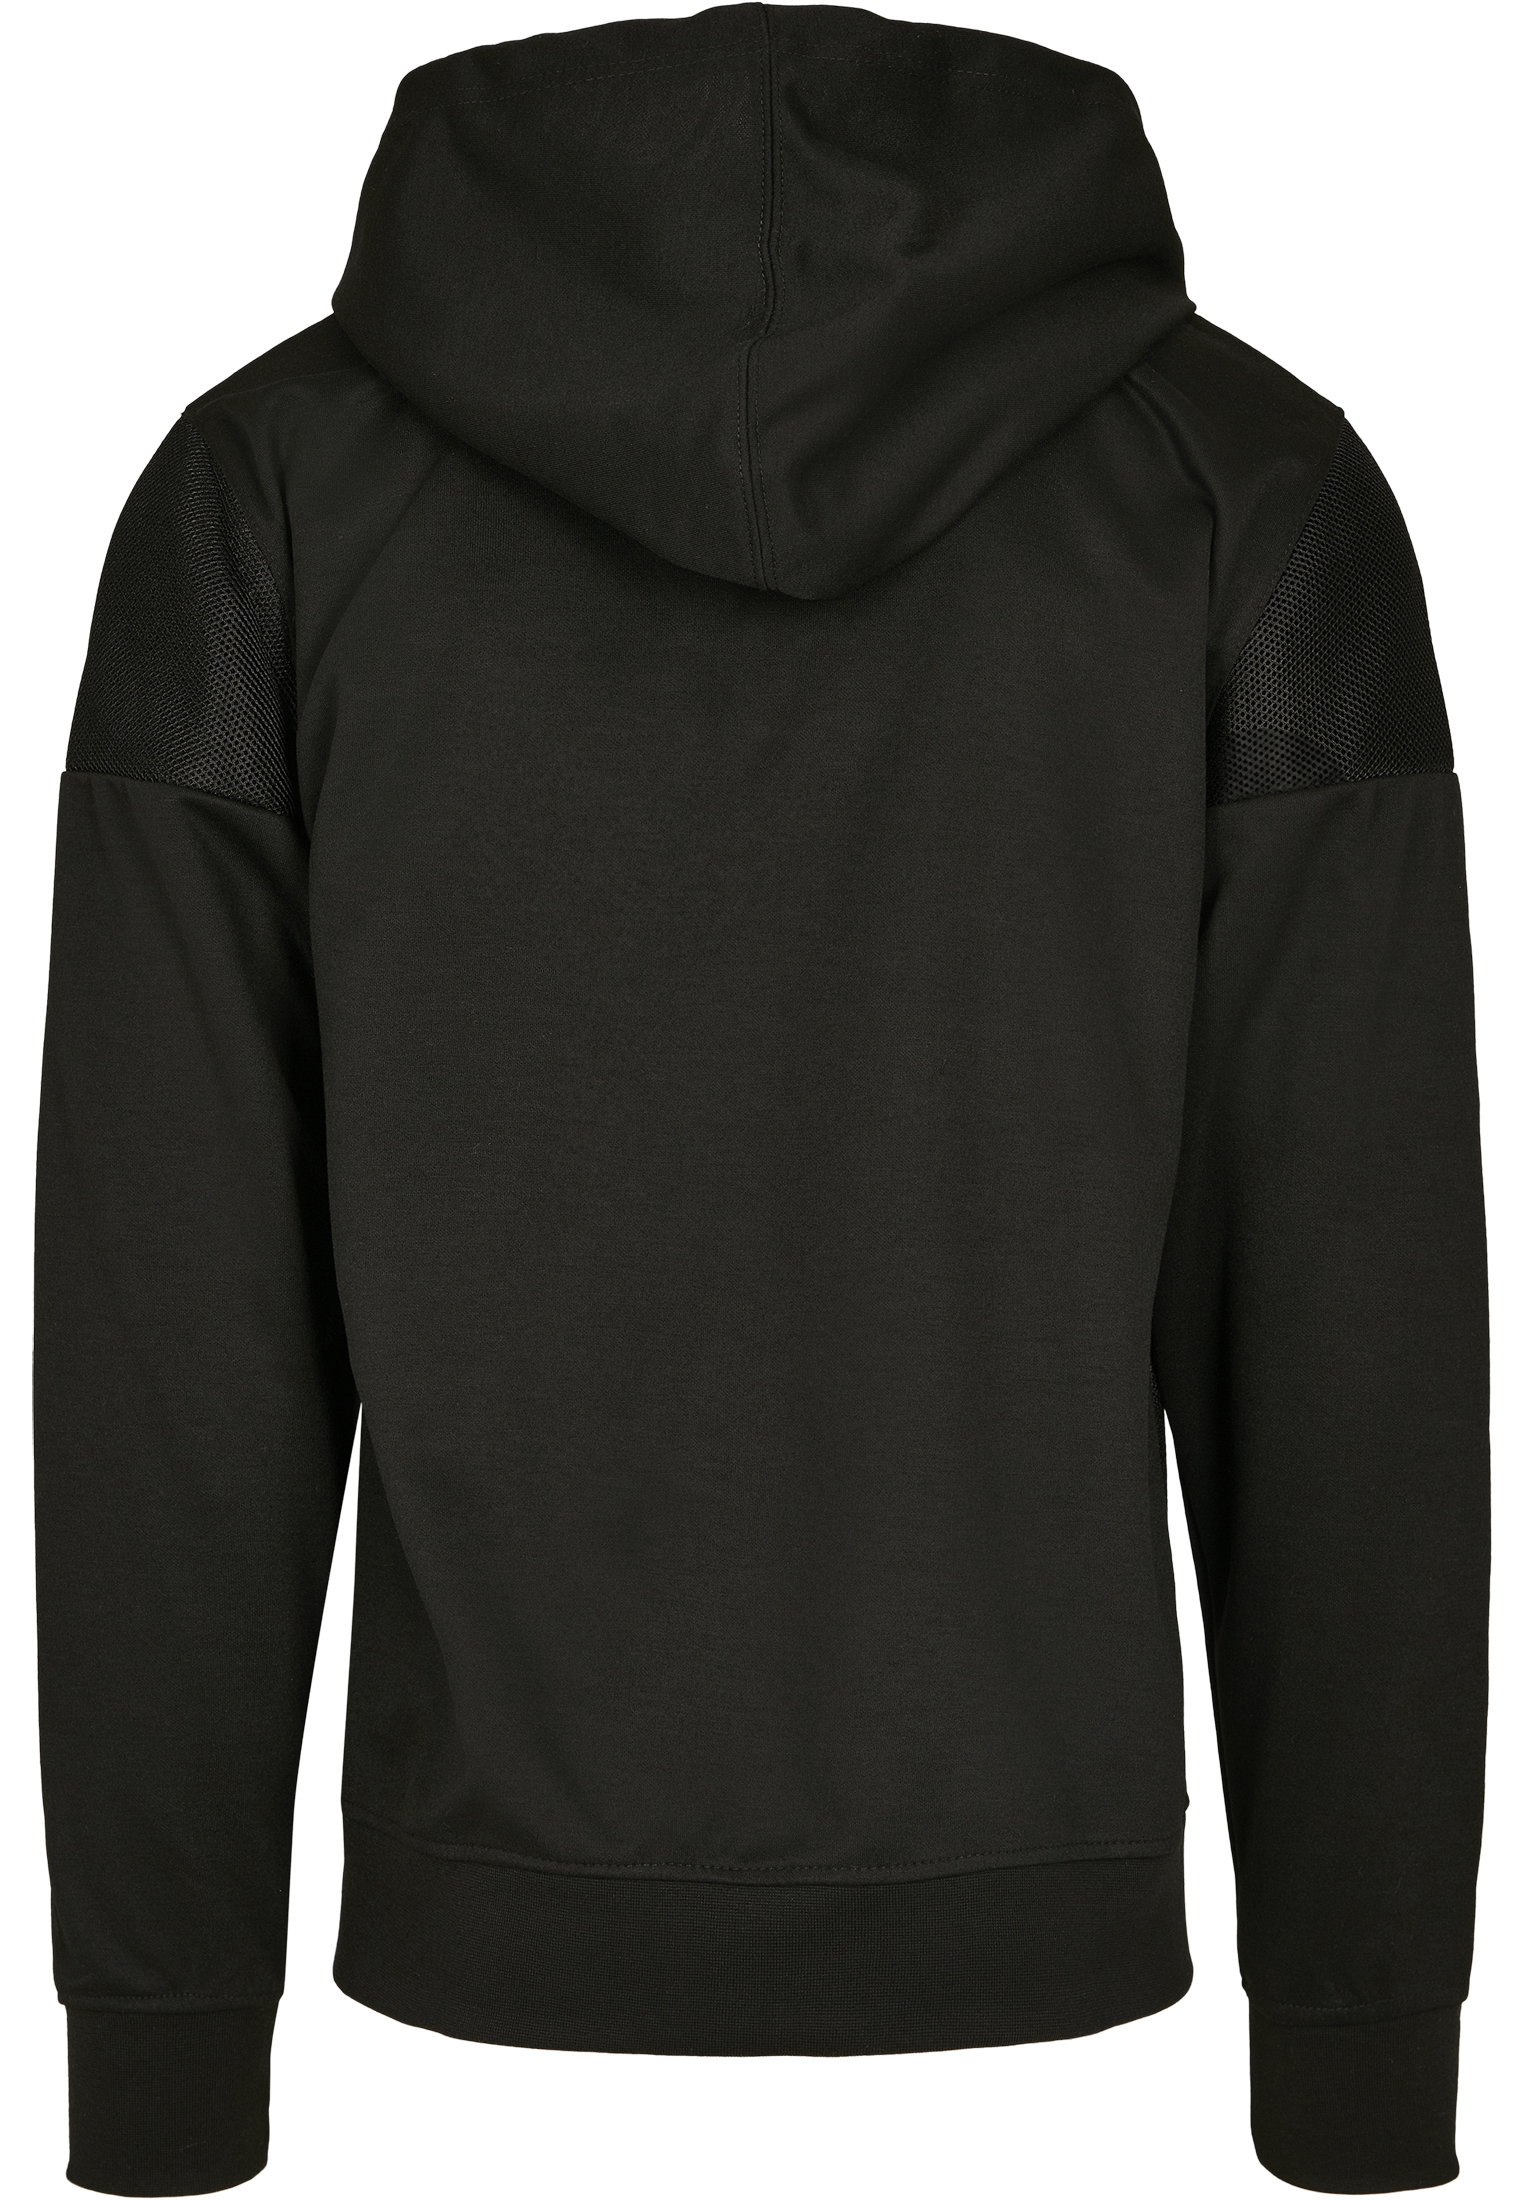 Southpole Neoprene Block Tech Fleece Full Zip Hoodie in Farbe black